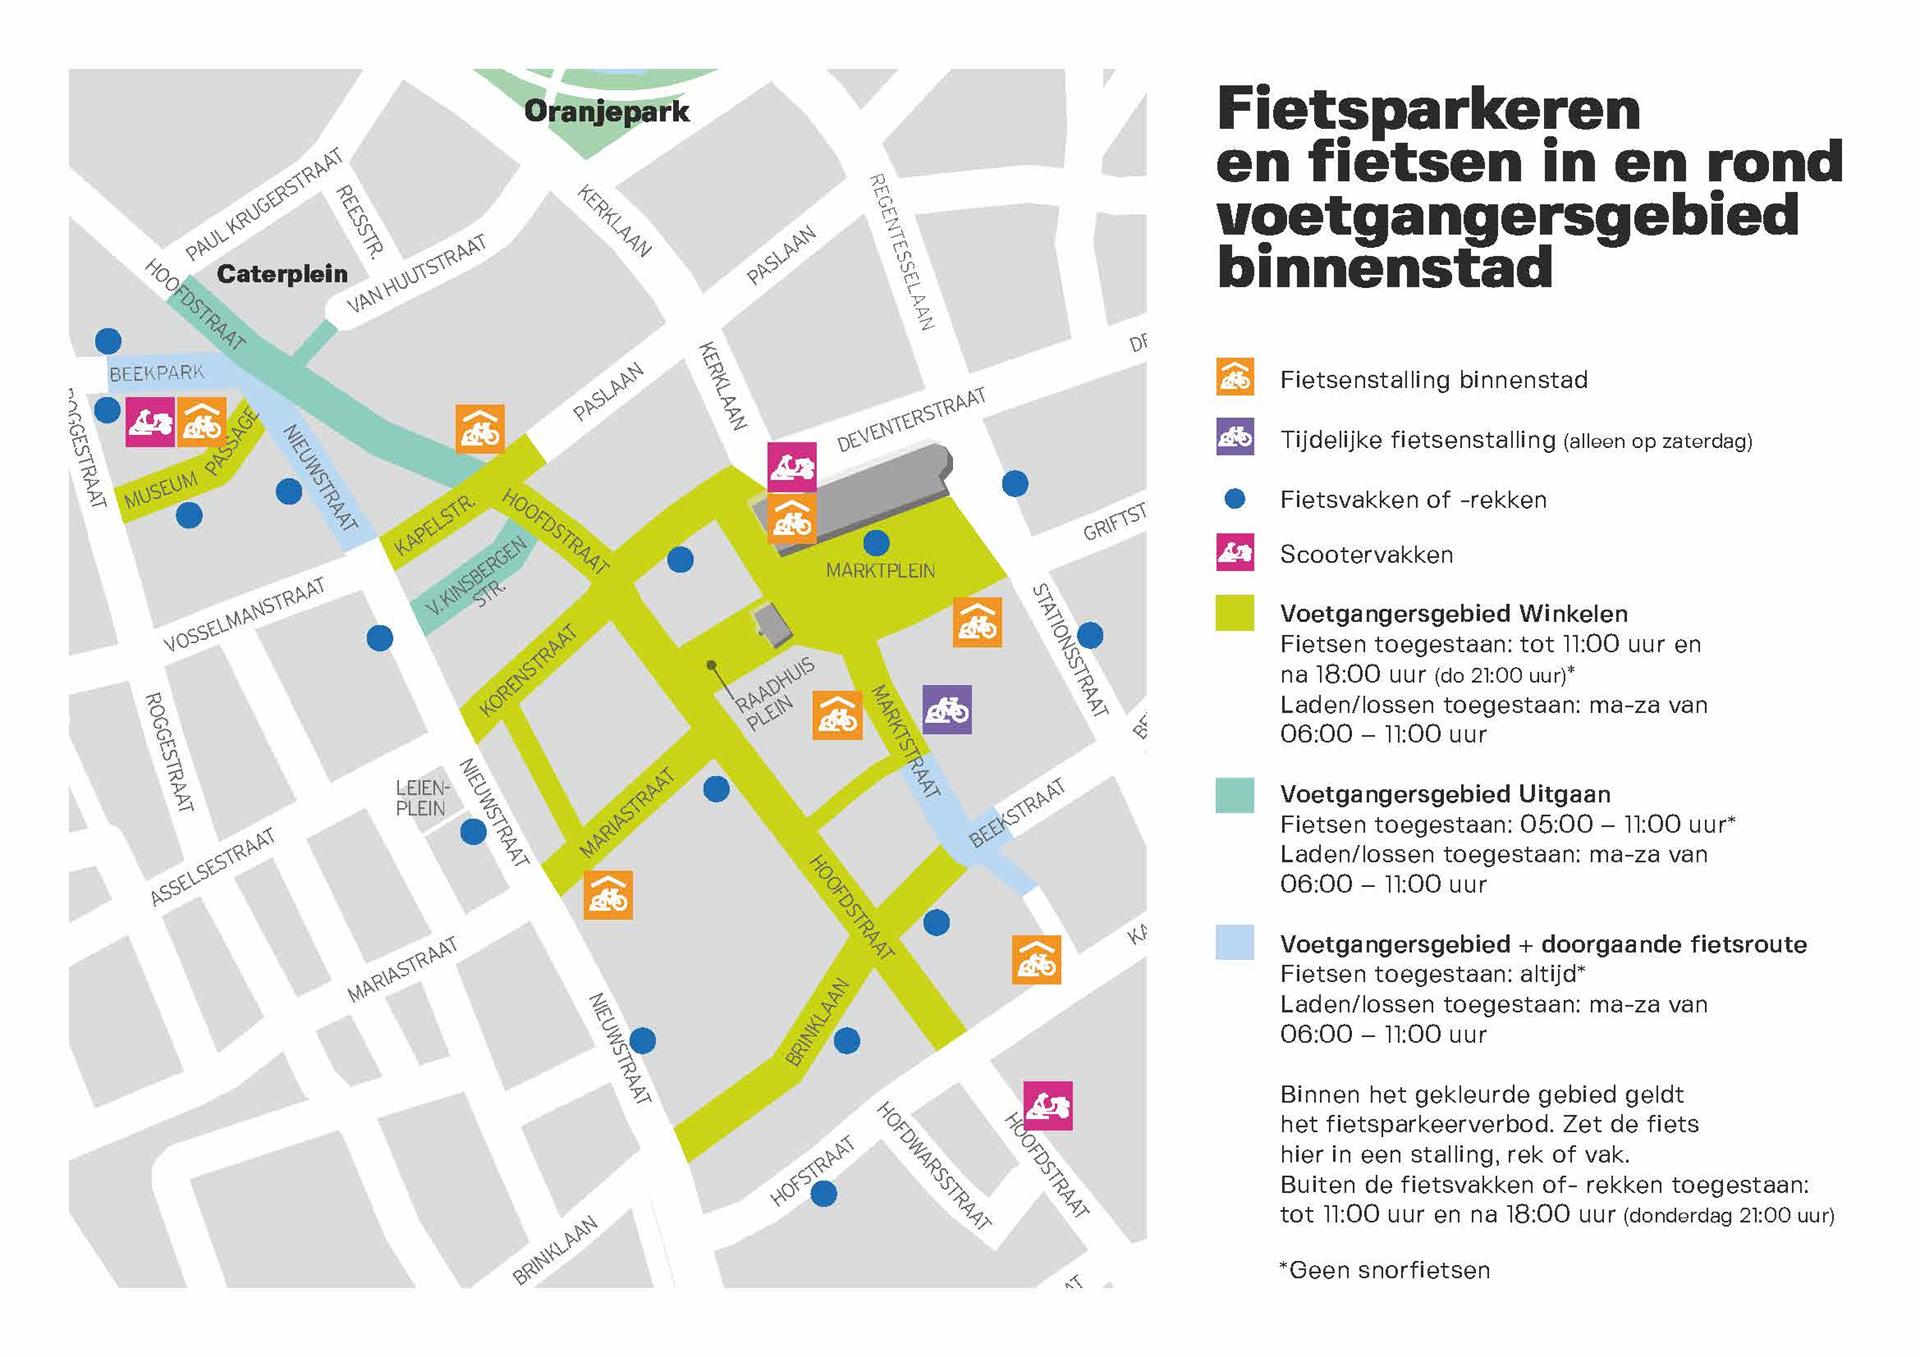 Overzicht van de gratis fietsenstallingen, fietsrekken en -vakken in de binnenstad